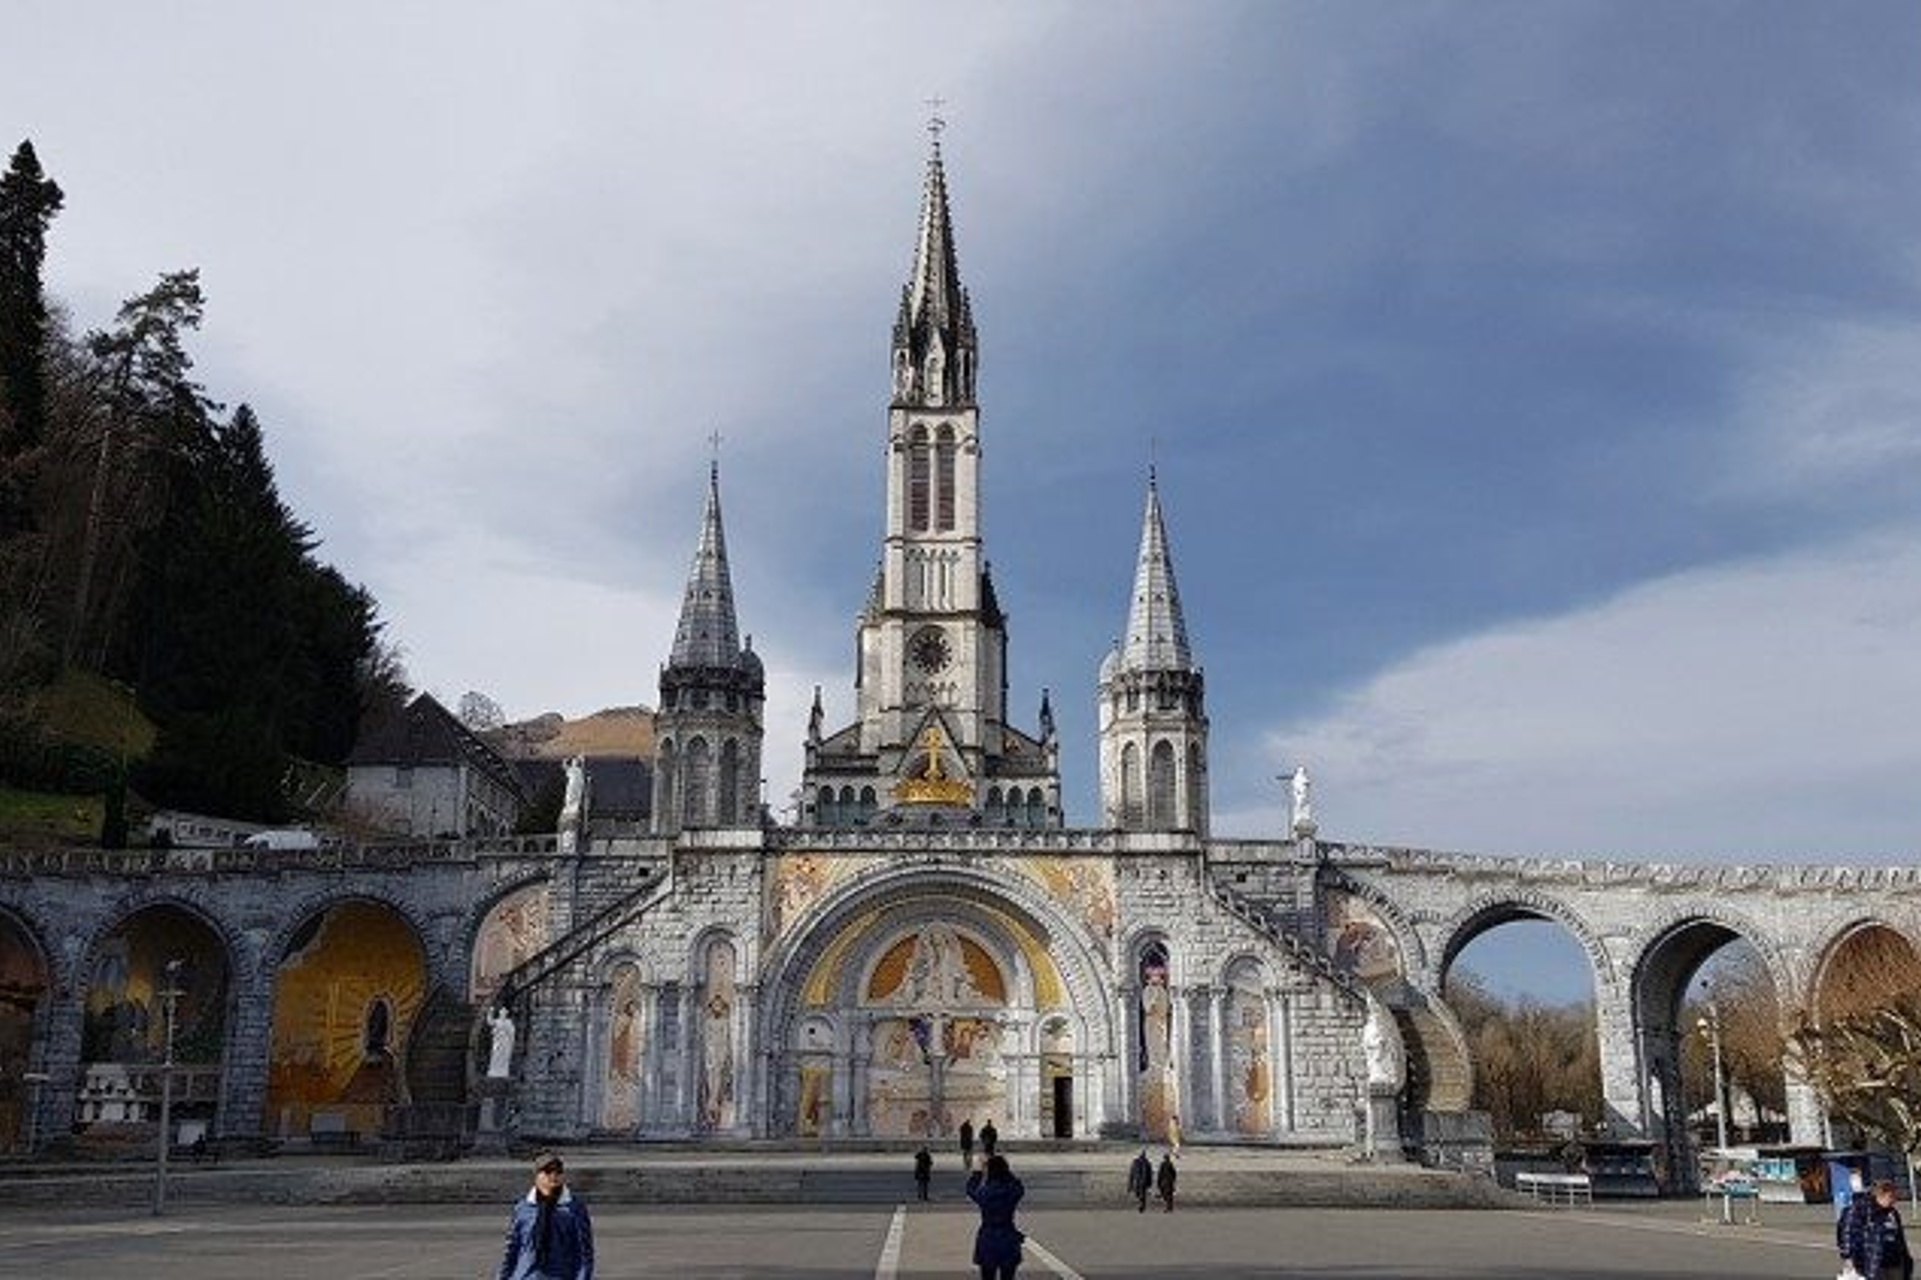 Lourdes to host first online world pilgrimage